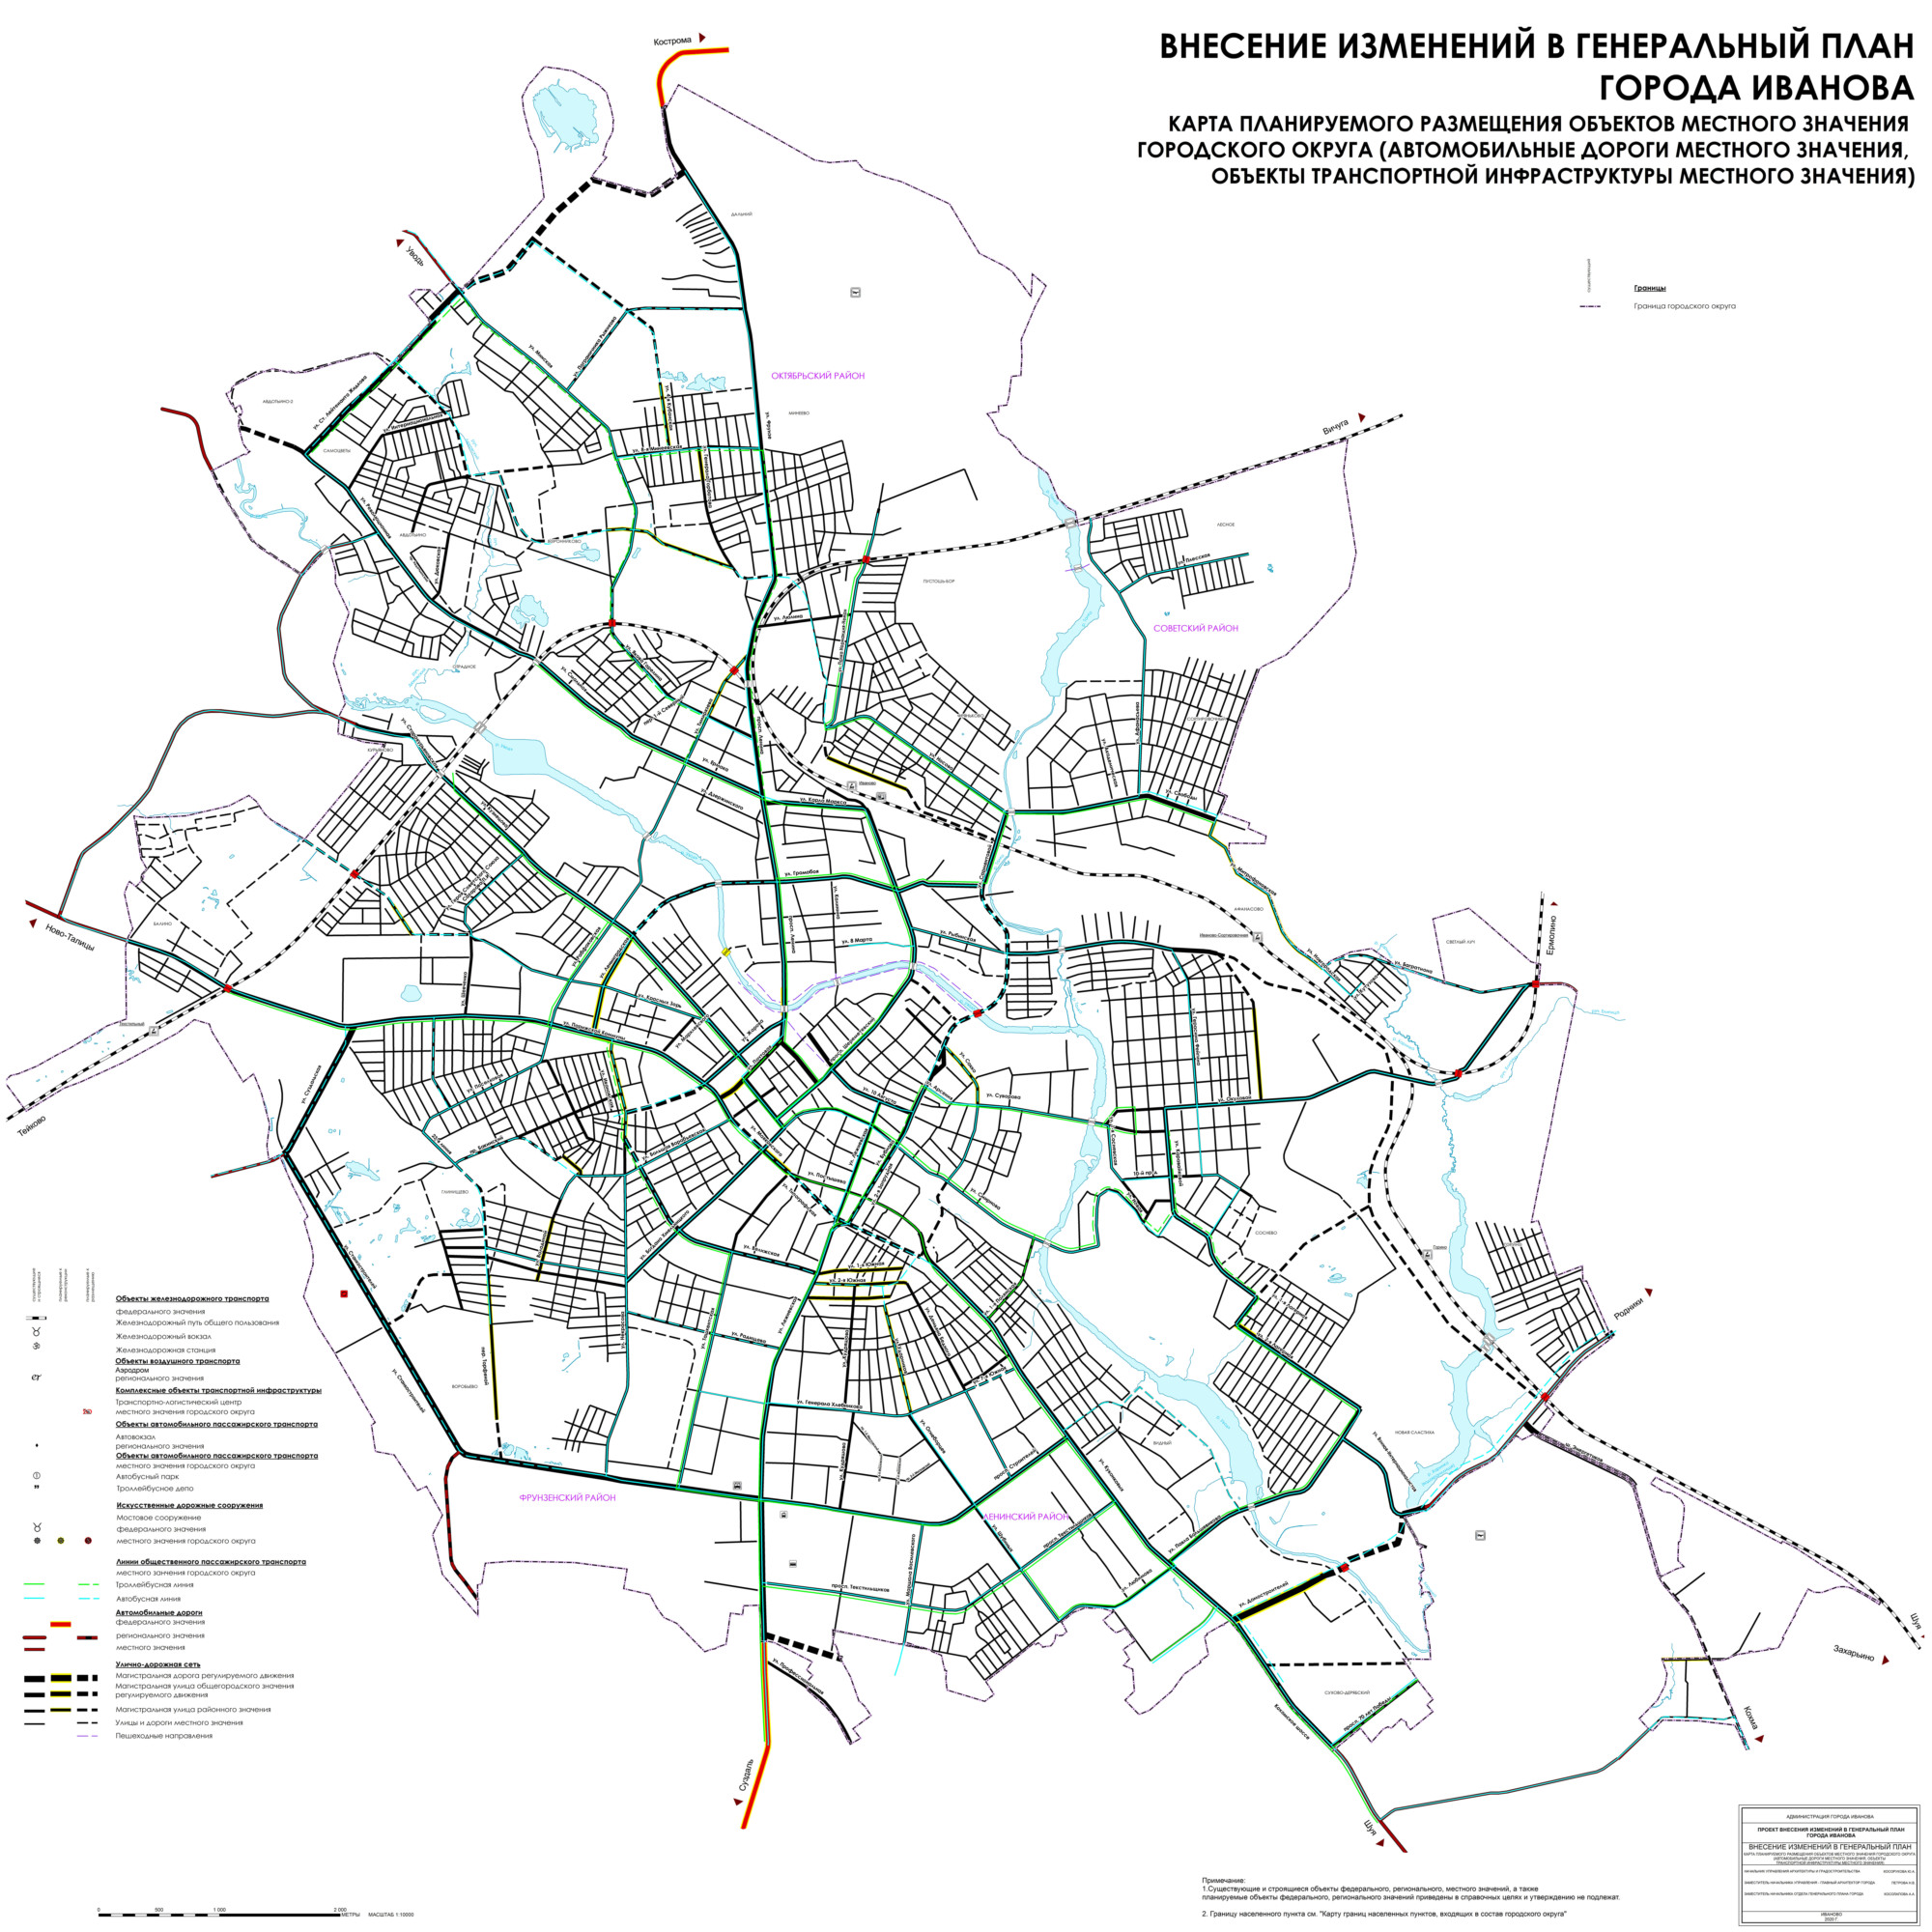 Карта планируемого размещения объектов местного значения городского округа (автомобильные дороги местного значения, объекты транспортной инфраструктуры местного значения)